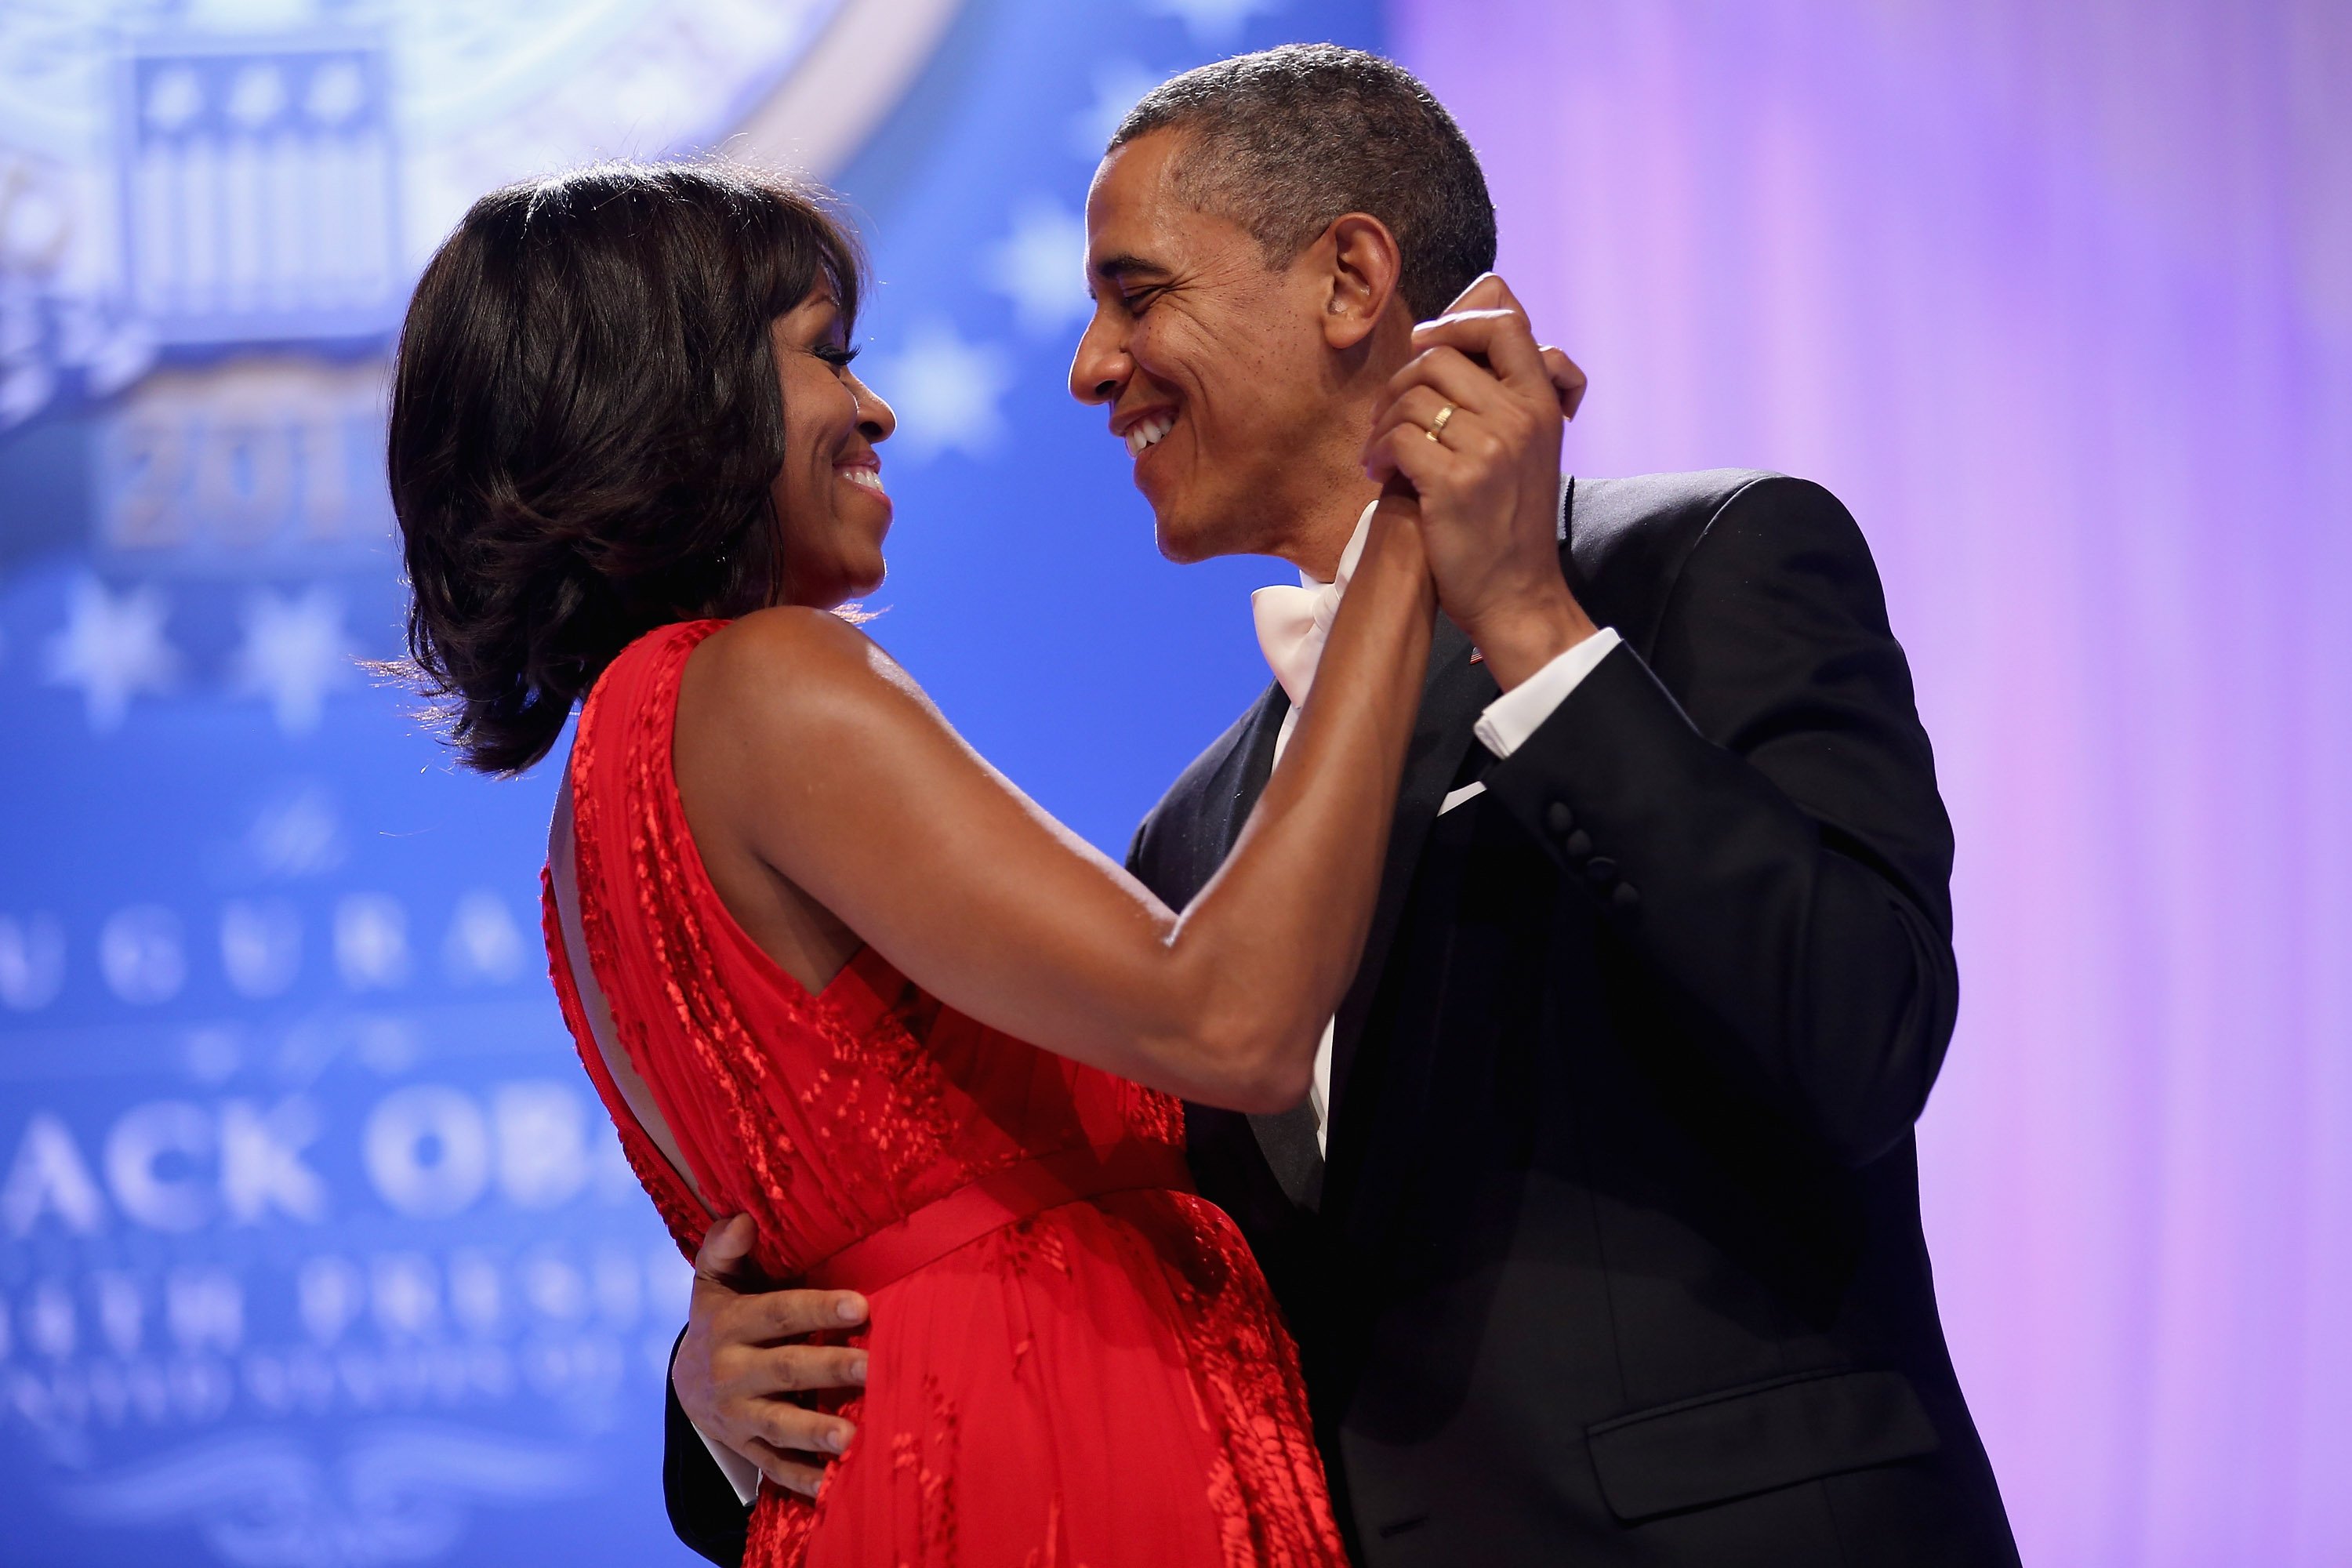 Barack Obama und Michelle Obama tanzen zusammen während des Eröffnungsballs des Oberbefehlshabers im Walter Washington Convention Center am 21. Januar 2013 in Washington, DC | Quelle: Getty Images